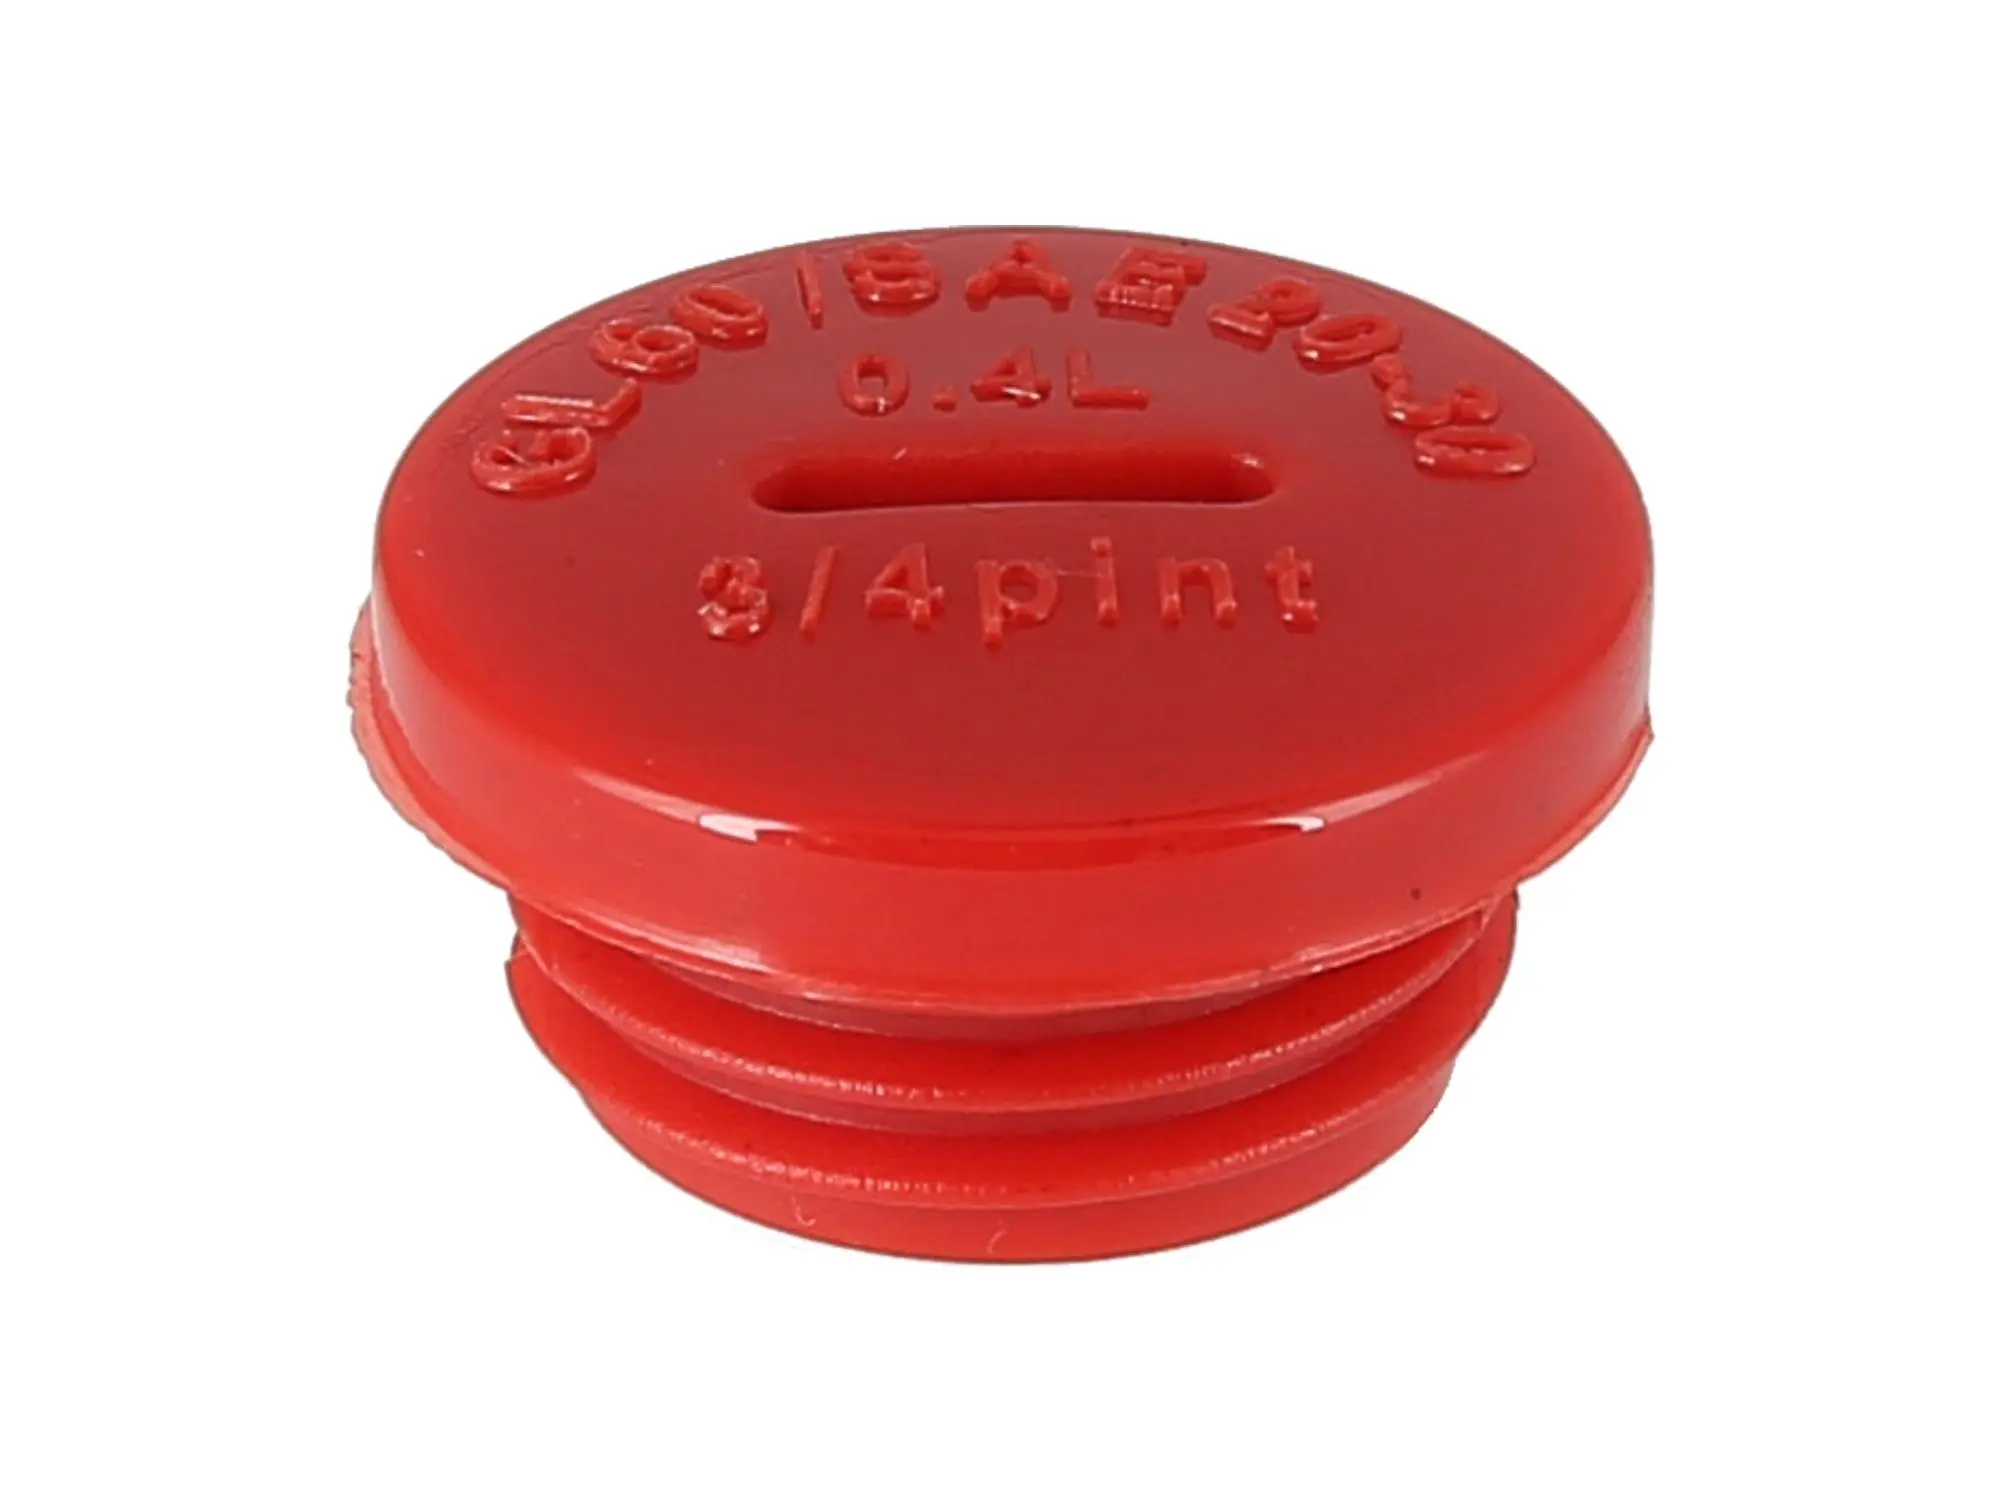 Verschlussschraube in Rot (Öleinfüllöffnung), ohne O-Ring, Art.-Nr.: 10002208 - Bild 1